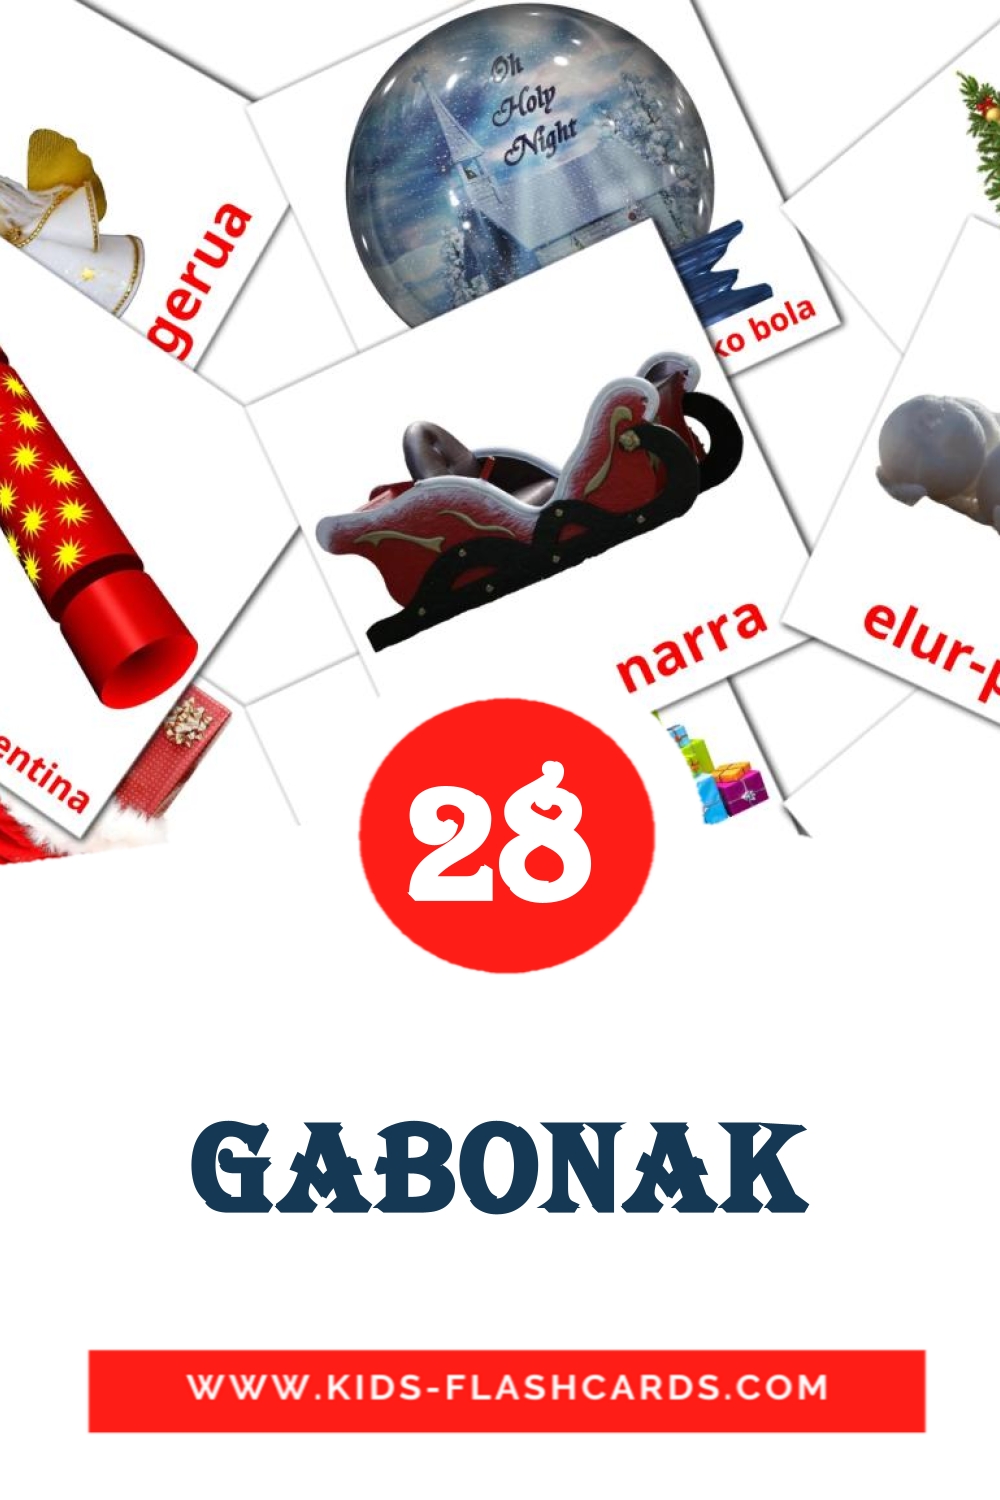 28 tarjetas didacticas de Gabonak para el jardín de infancia en euskera